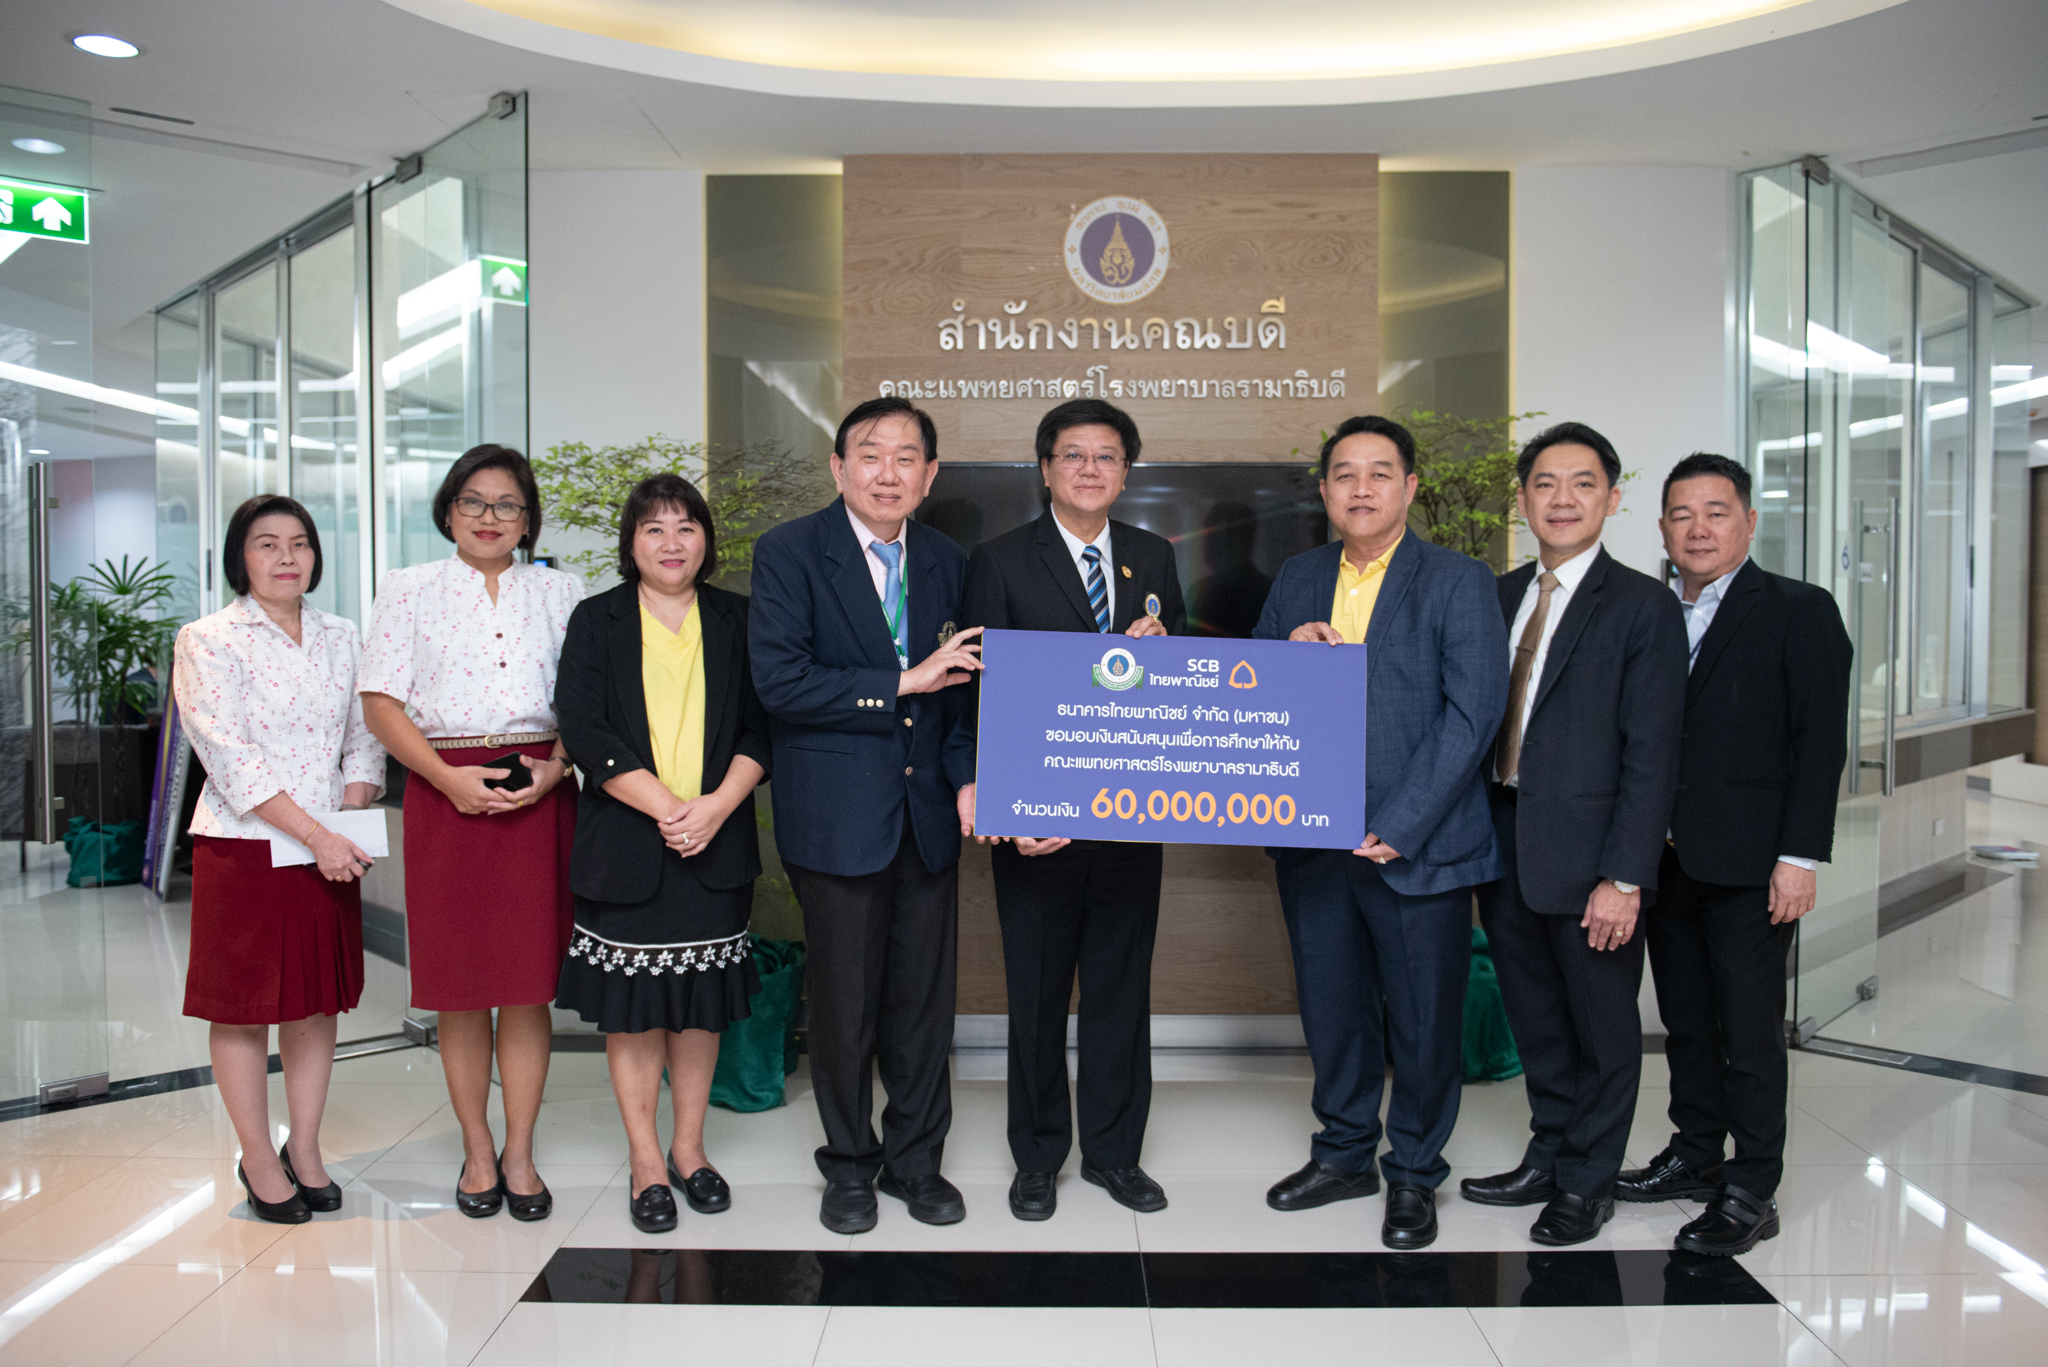 ธนาคารไทยพาณิชย์ มอบเงินบริจาคเพื่อสนับสนุนการศึกษา แก่คณะแพทยศาสตร์โรงพยาบาลรามาธิบดี มหาวิทยาลัยมหิดล